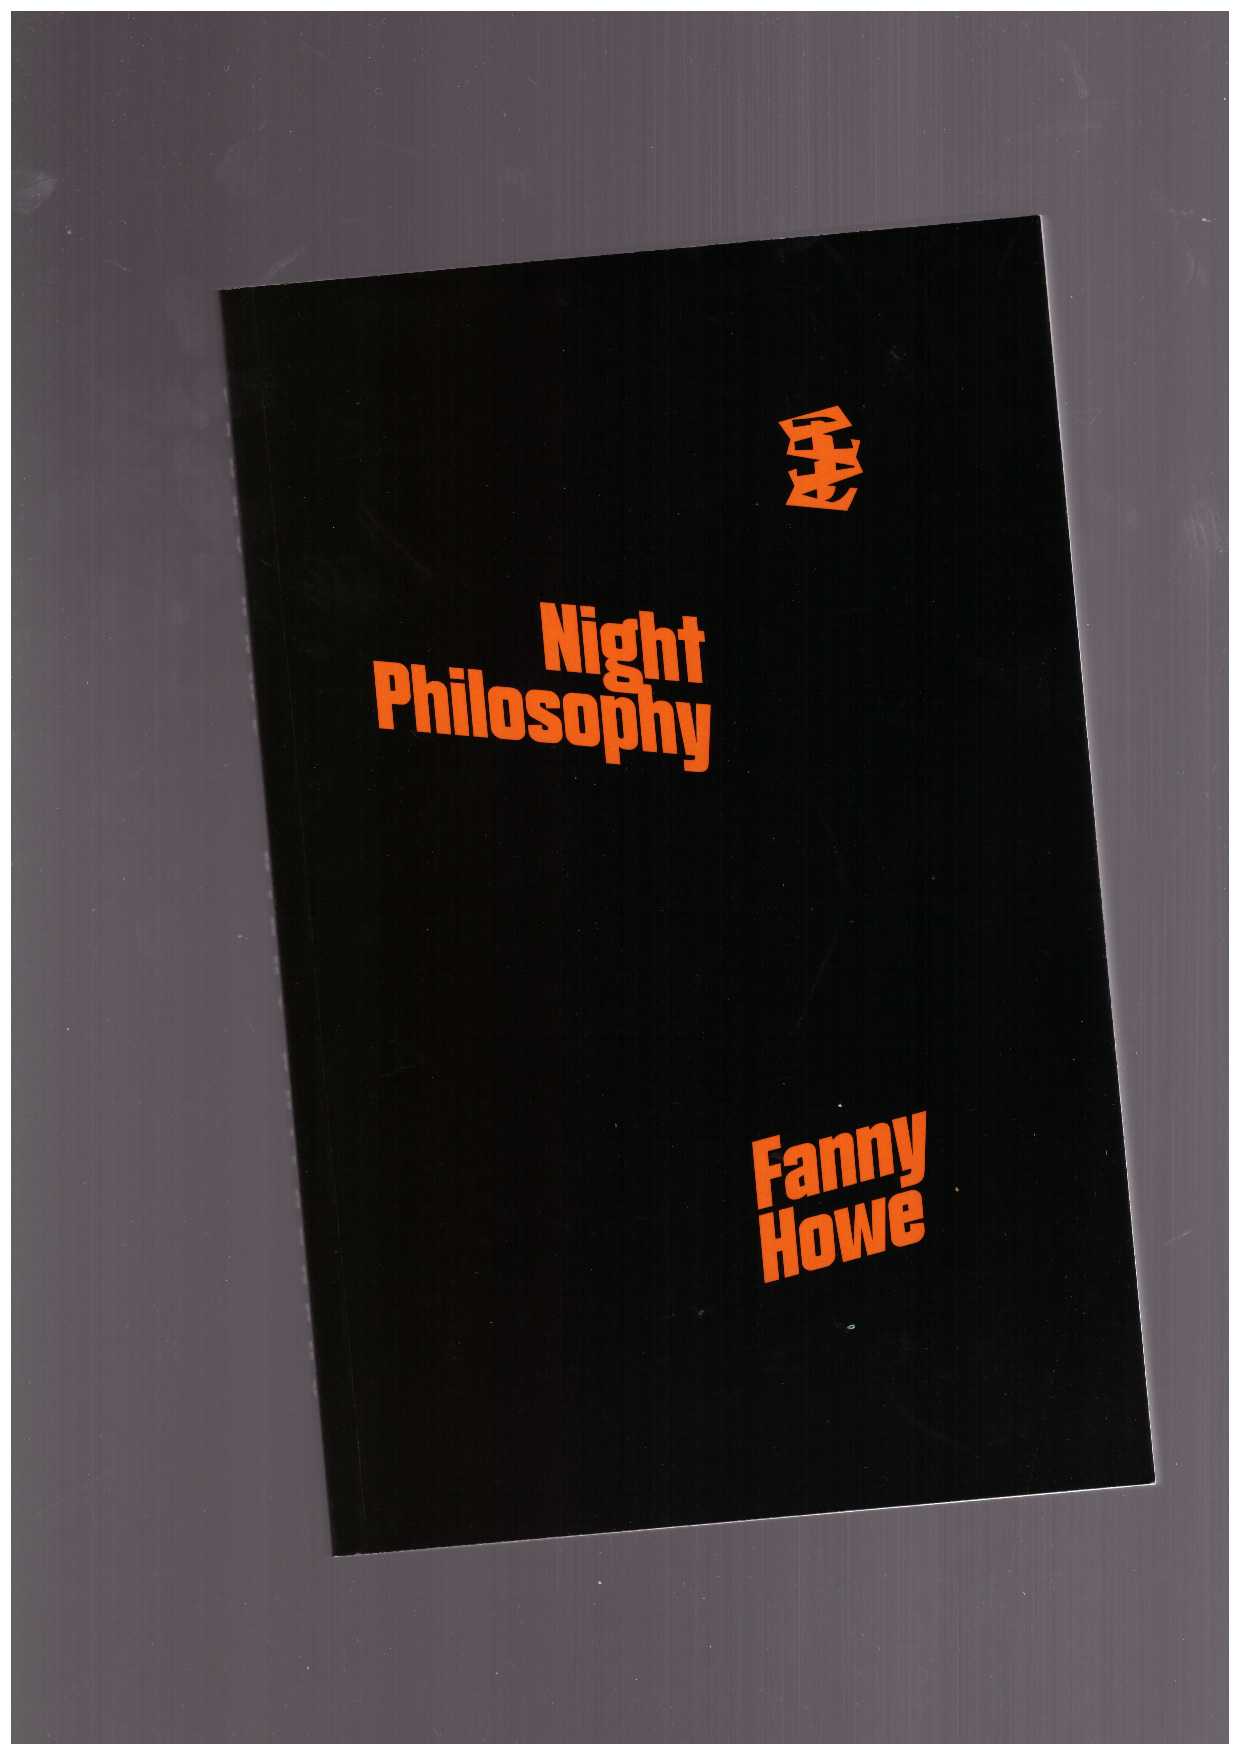 HOWE, Fanny - Night Philosophy